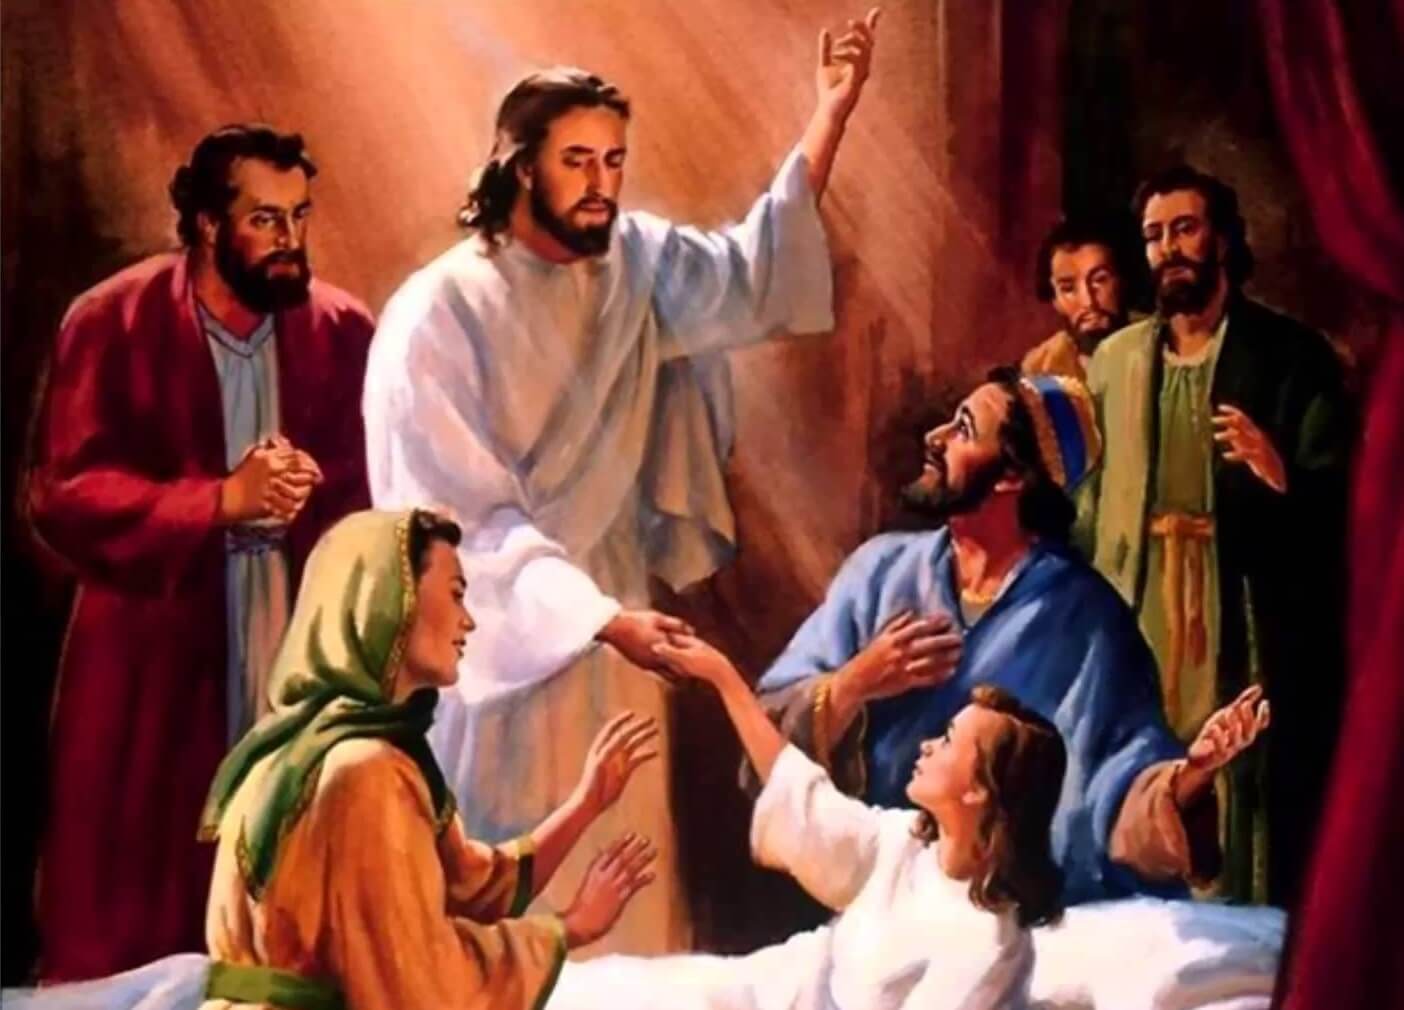 jesus healing the sick